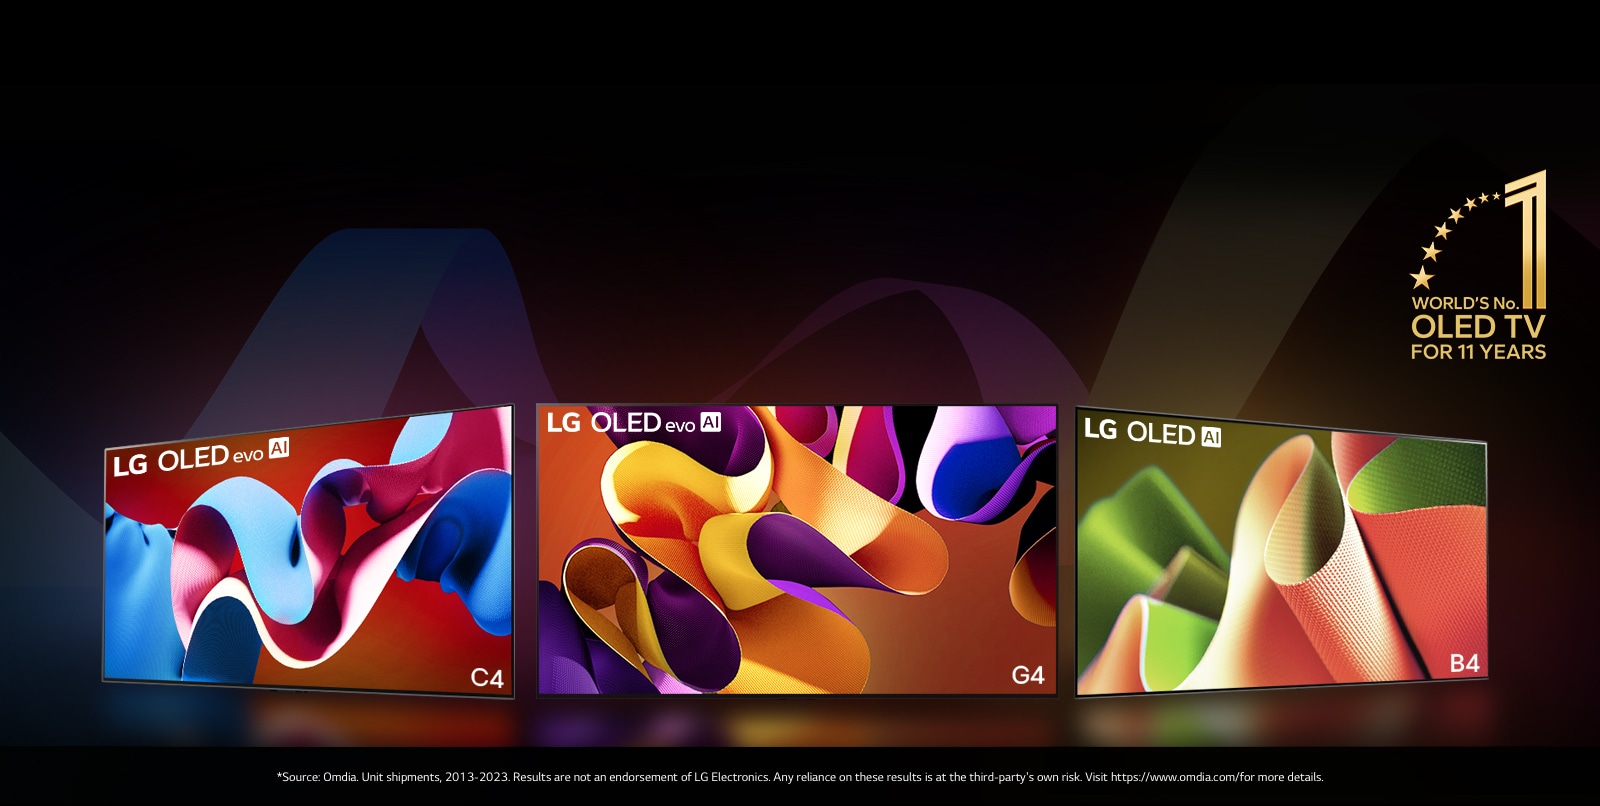 الكمبيرتر الشخصي: تظهر التلفزيونات LG OLED evo G4 وLG OLED evo C4 وLG OLED B4 جنبًا إلى جنب، ويعرض كل منها عملًا فنيًا تجريديًا مختلف الألوان على الشاشة. ينبعث الضوء من كل التلفزيونات إلى الأرض. في الزاوية اليمنى العليا يظهر الشعار الذهبي تلفزيون OLED TV رقم 1 في العالم لمدة 11 عامًا.  هاتف محمول: تظهر الصور نفسها لكل من LG OLED evo G4 وLG OLED evo C4 وLG OLED B4 على التوالي في الجهاز المحمول. ينبعث الضوء من كل التلفزيونات إلى الأرض. في الزاوية اليمنى العليا يظهر الشعار الذهبي تلفزيون OLED TV رقم 1 في العالم لمدة 11 عامًا.